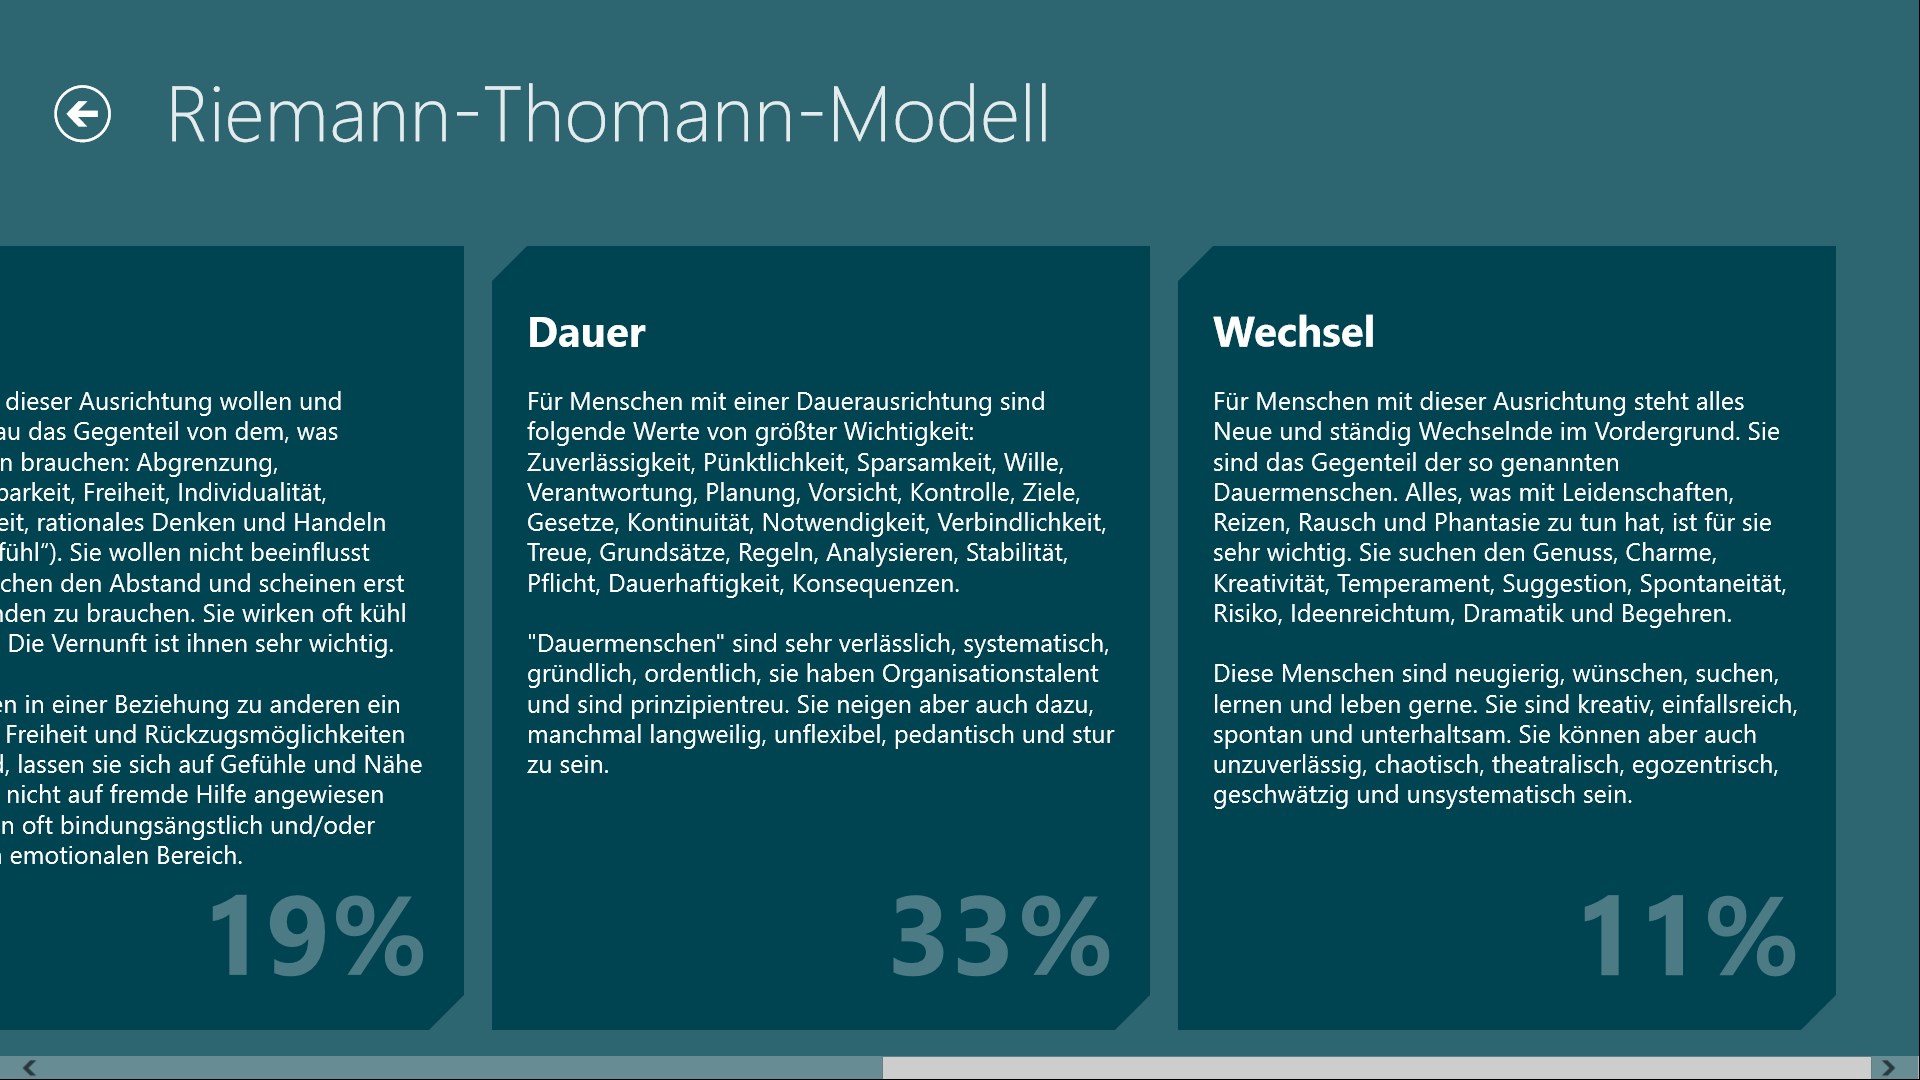 Riemann-Thomann-Modell.